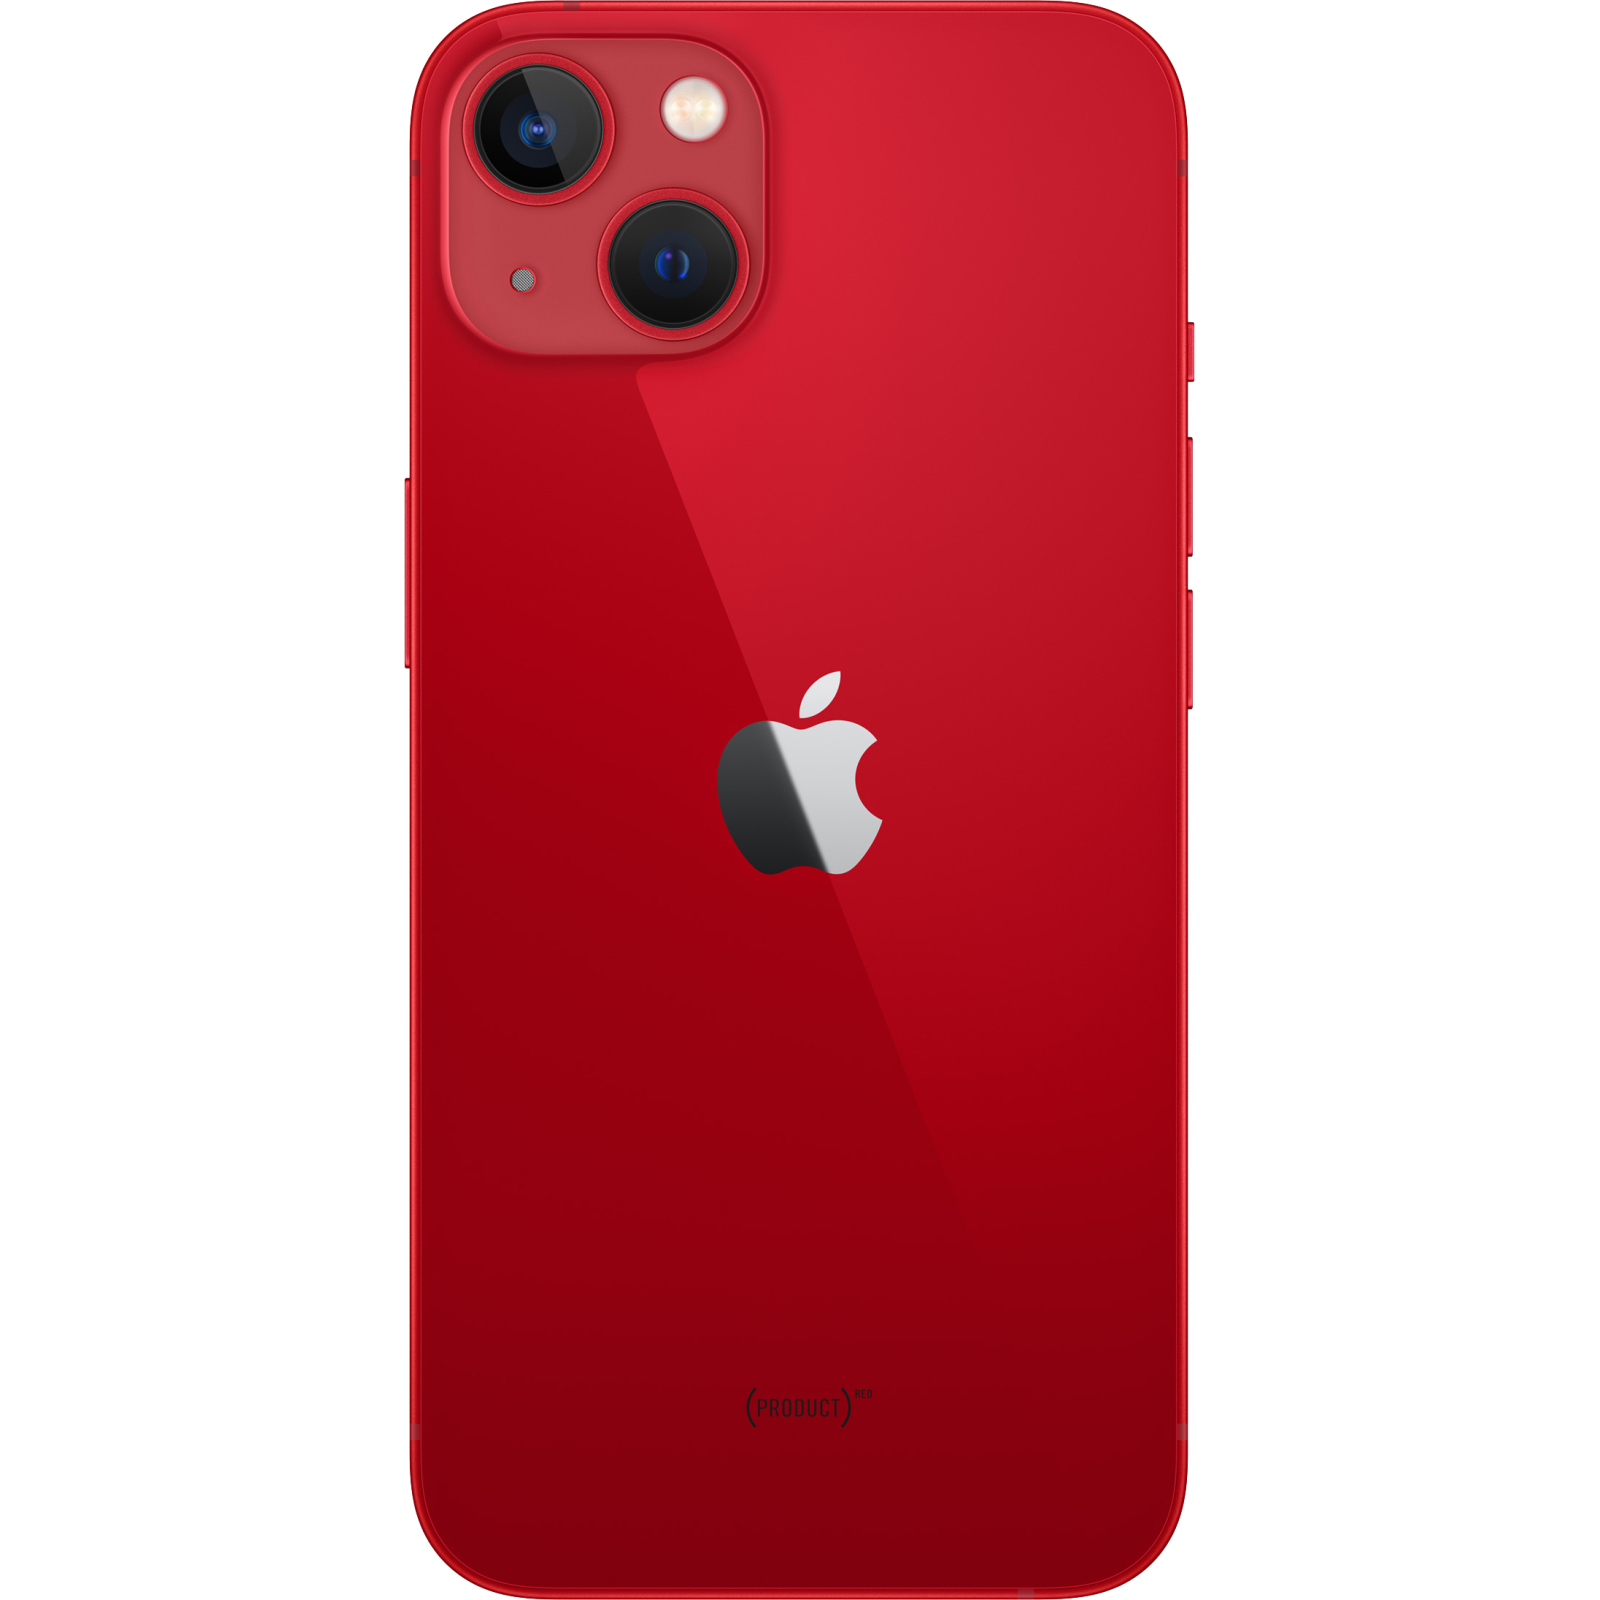 Мобильный телефон Apple iPhone 13 256GB (PRODUCT) RED (MLQ93) изображение 2